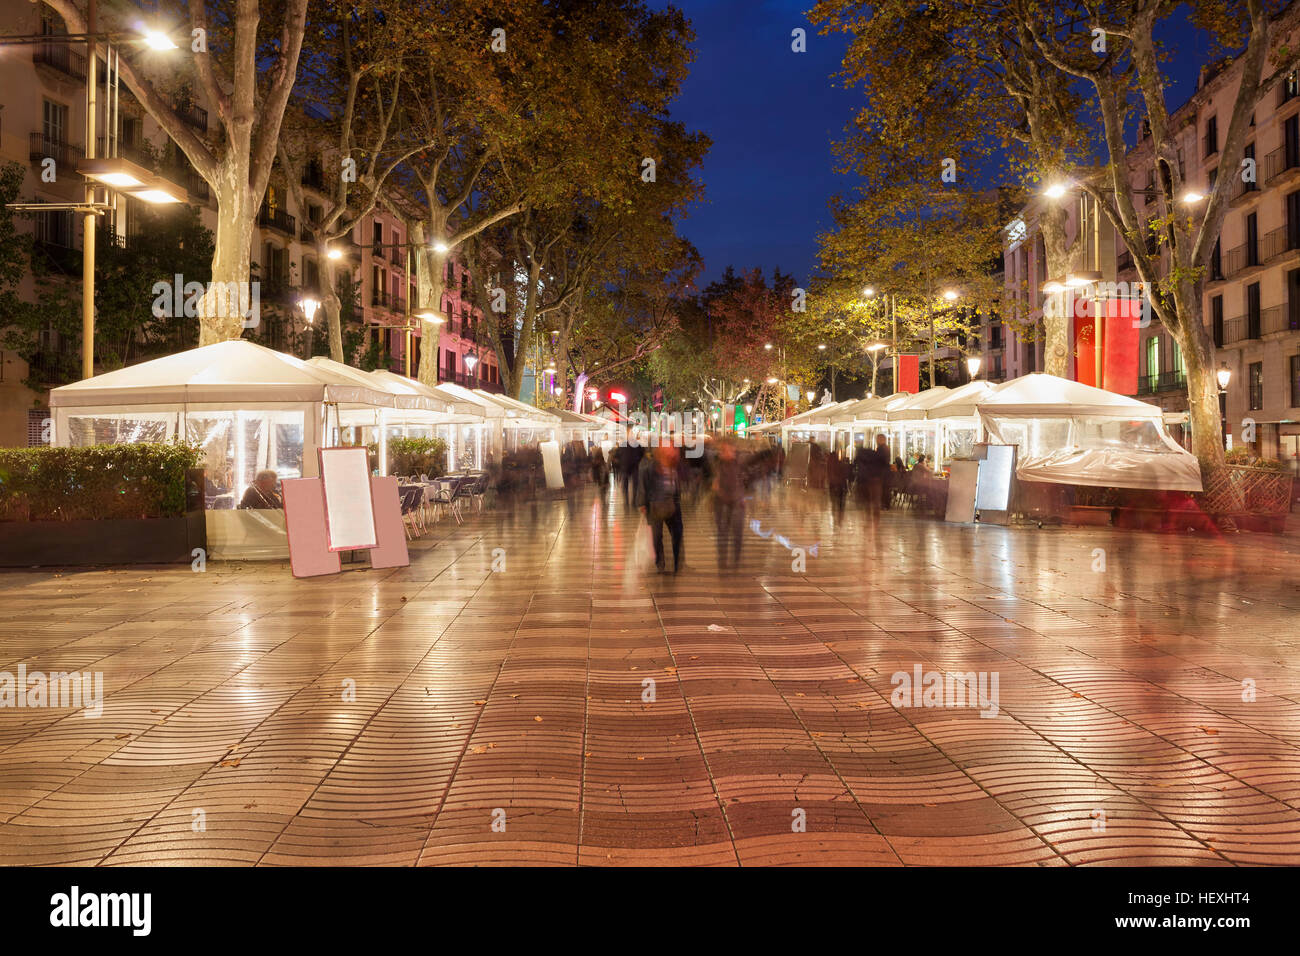 Spain, Barcelona, La Rambla at night Stock Photo - Alamy